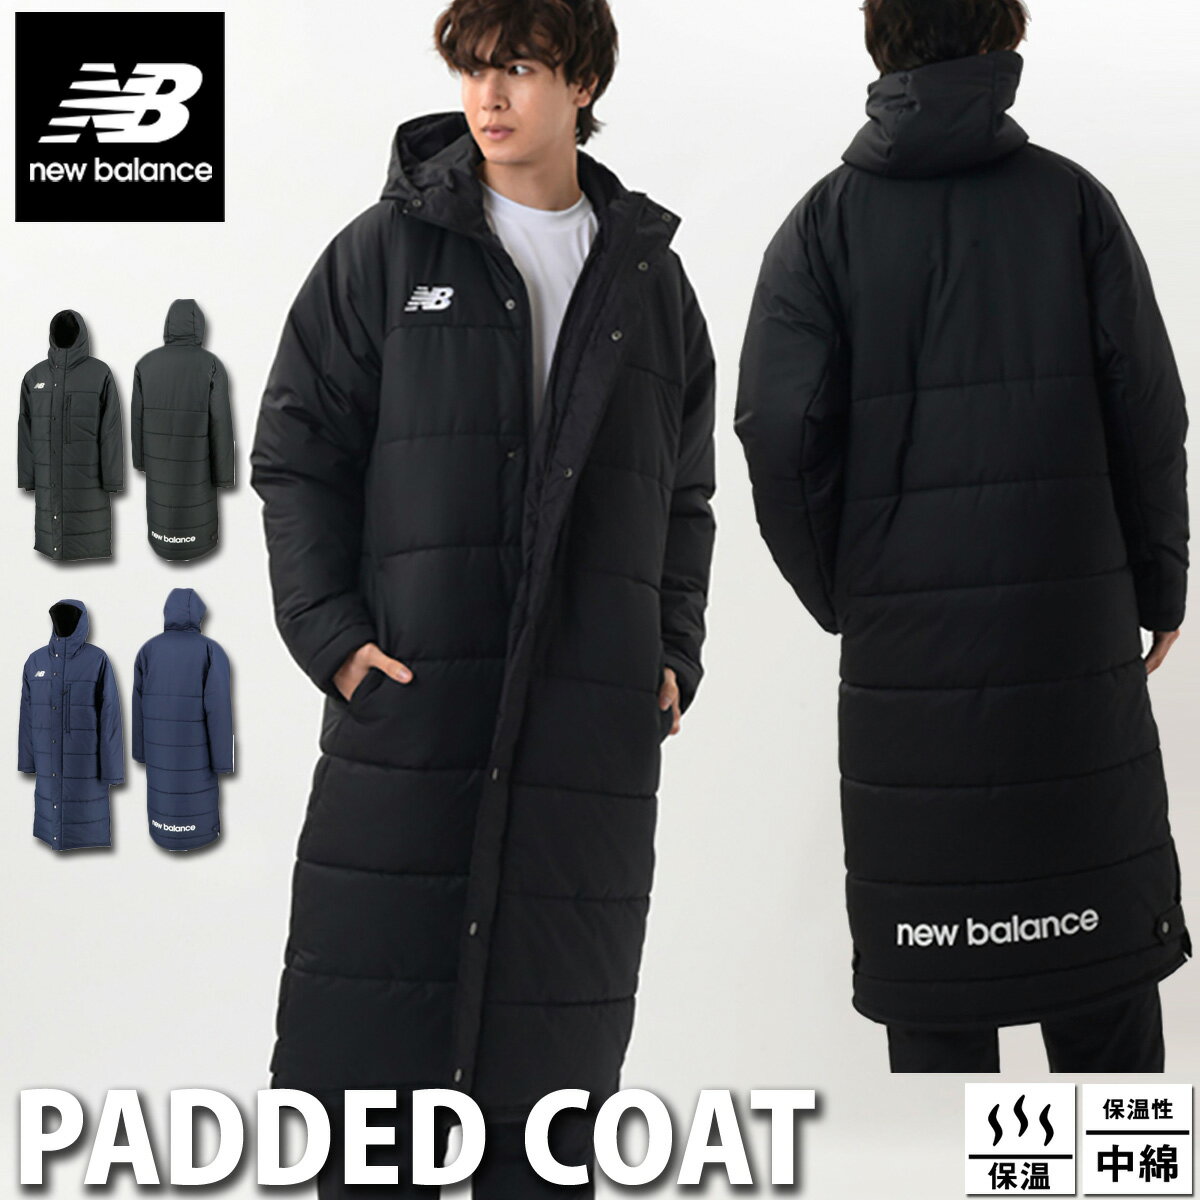 メンズベンチコート│大きいサイズでかっこいい、冬用コートのおすすめ